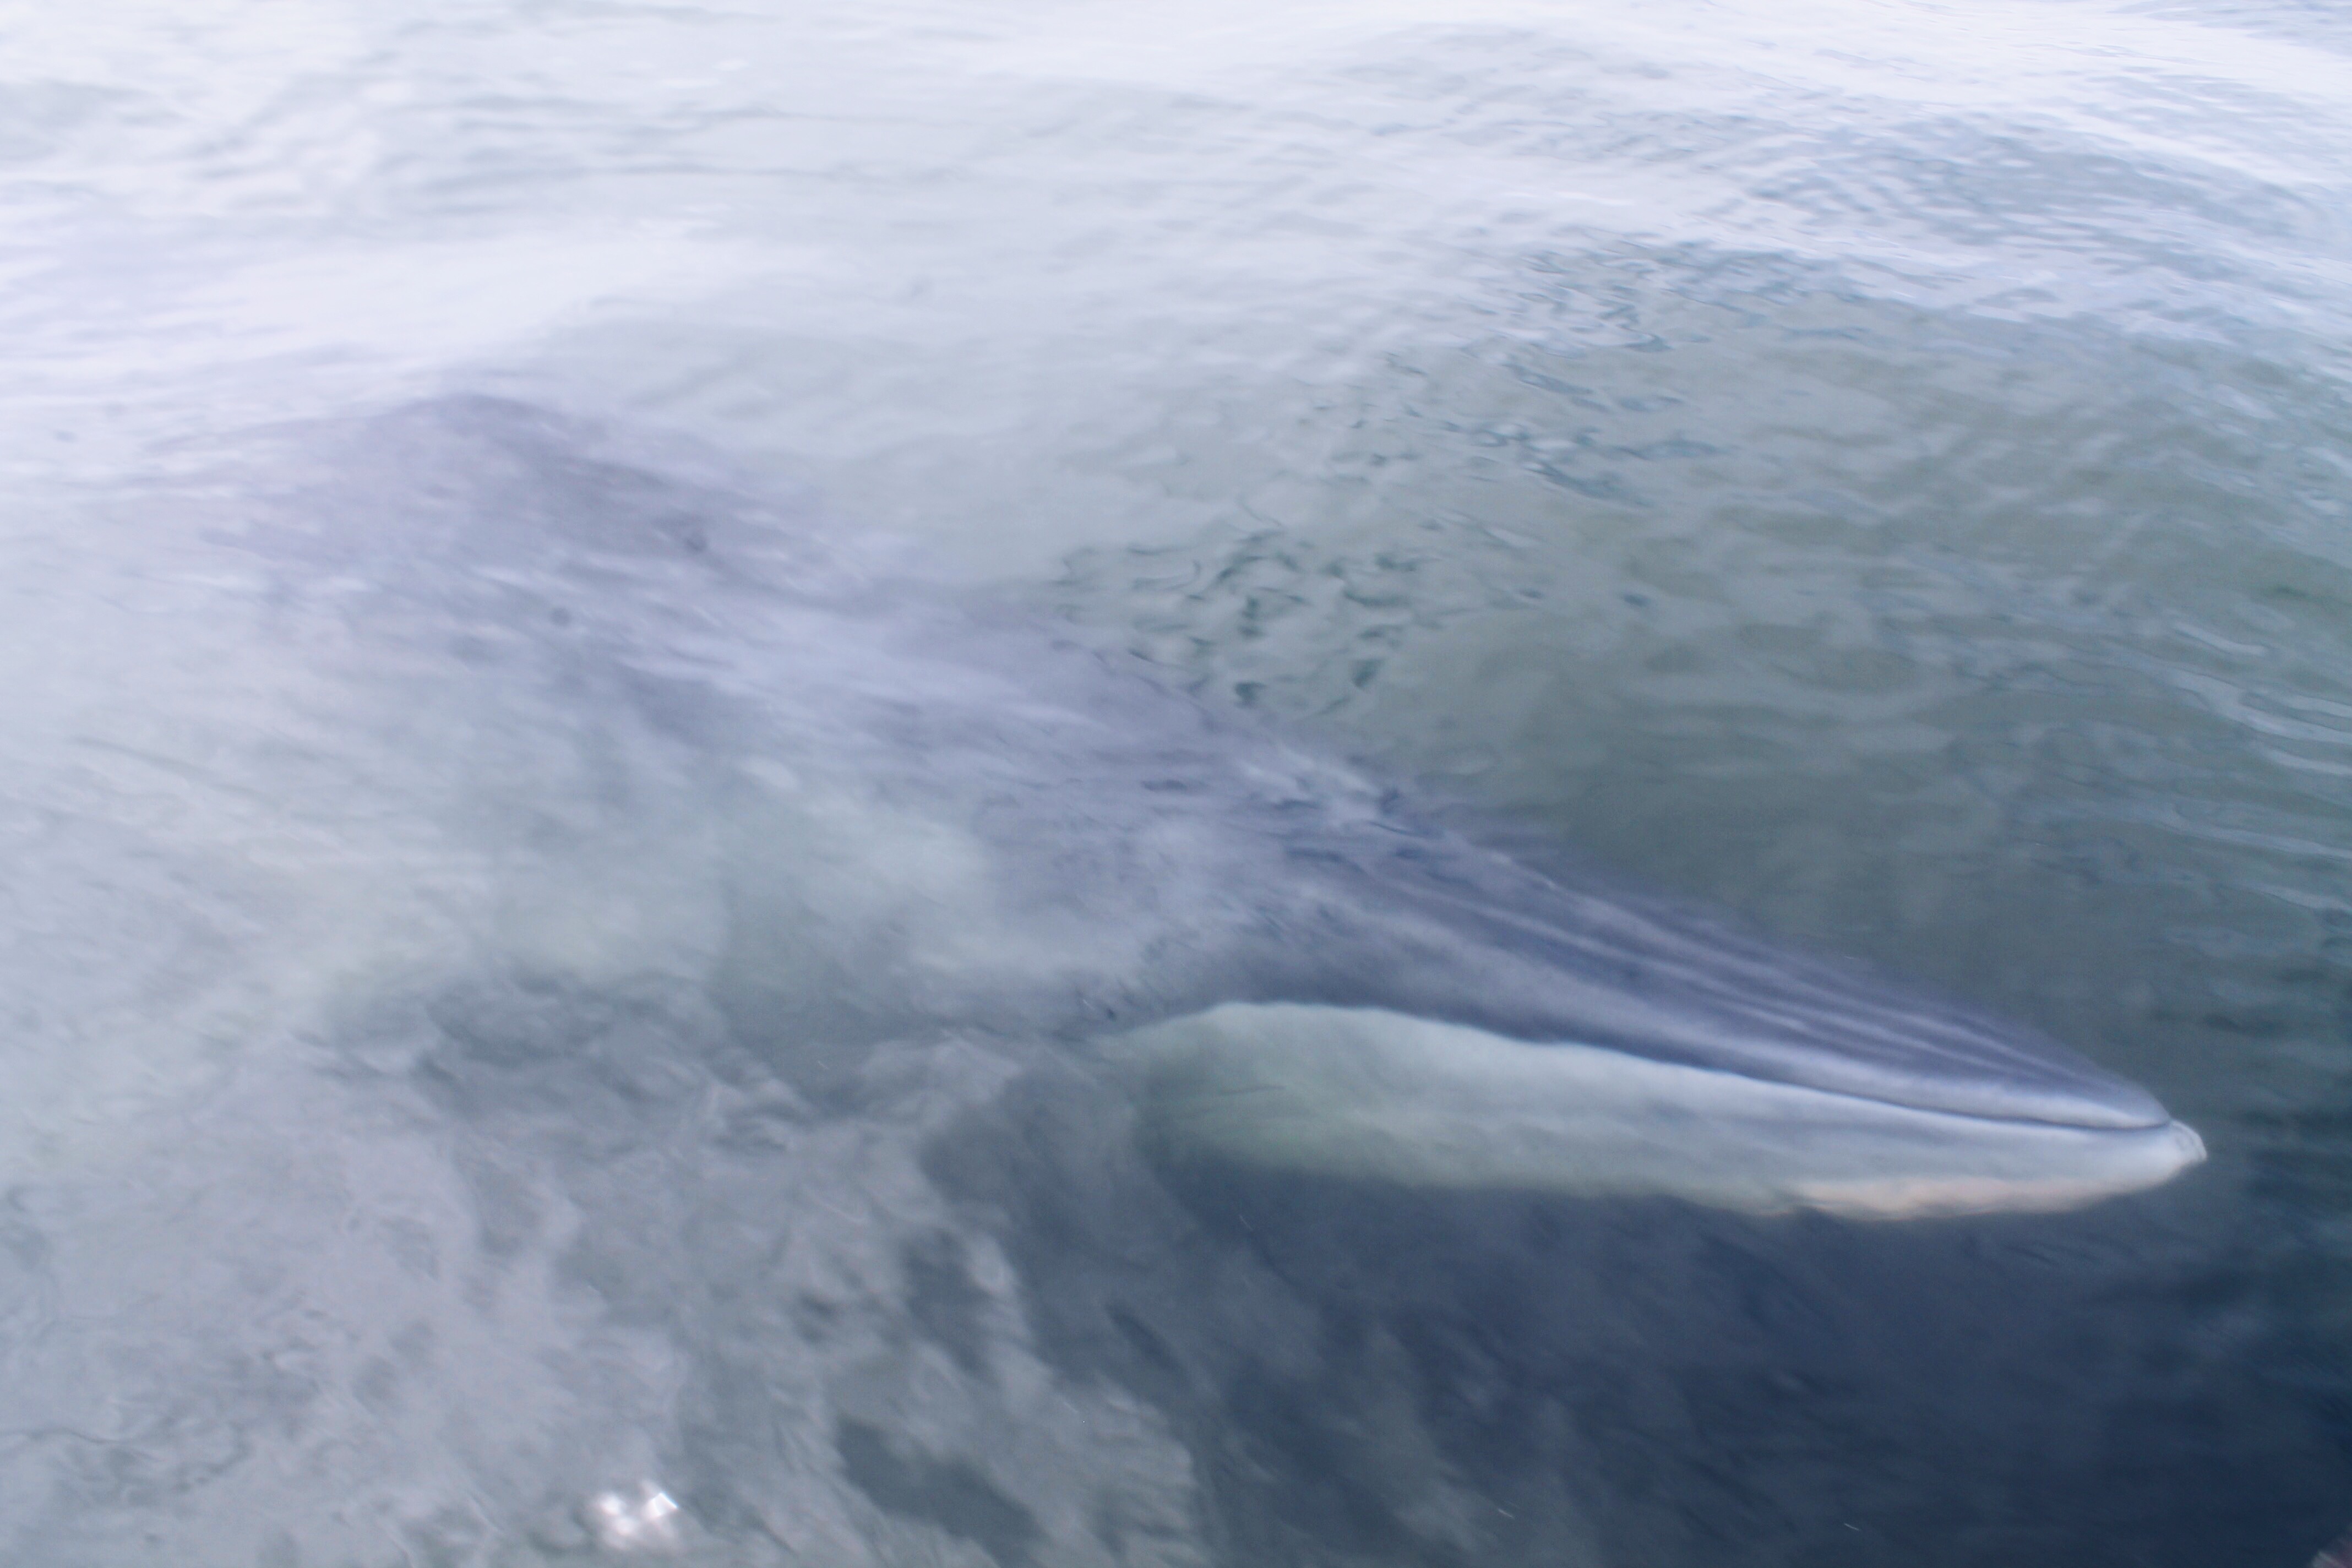 เที่ยวเพชรบุรีปลายปี กินหอย ดูปลาวาฬ ชมพระอาทิตย์ขึ้น สุดฟิน!